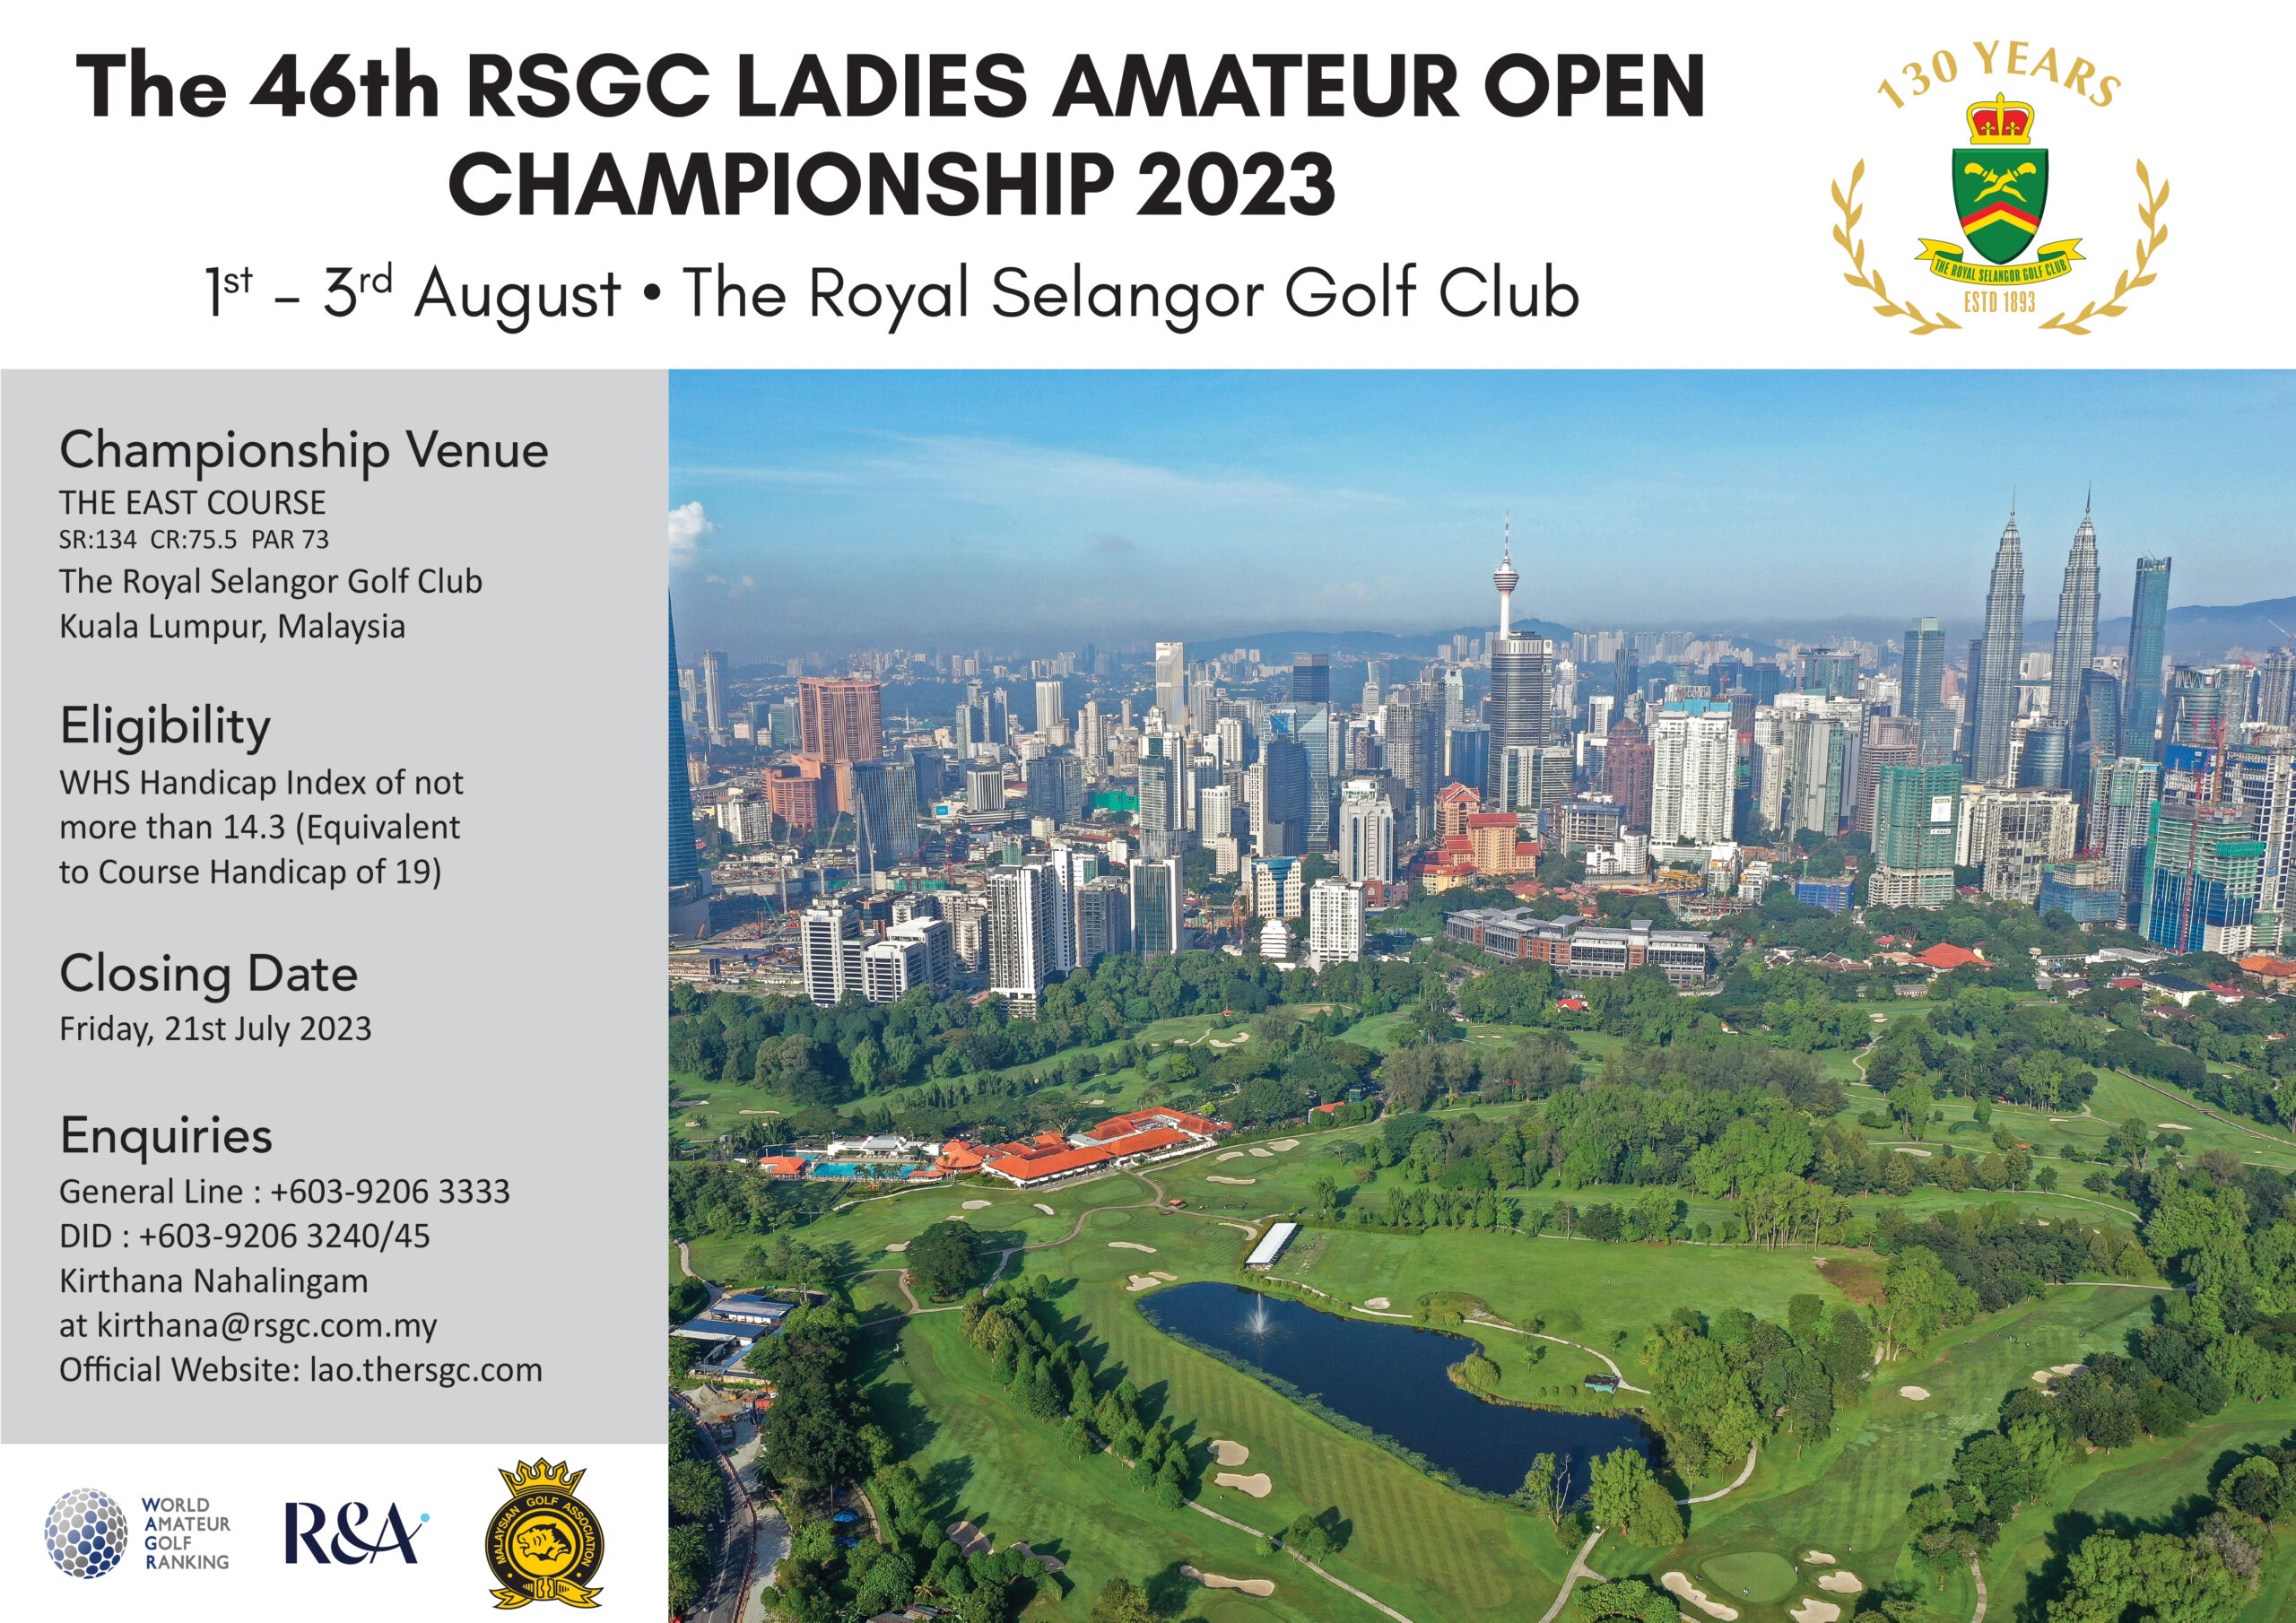 The 46th RSGC Ladies Amateur Open Championship 2023